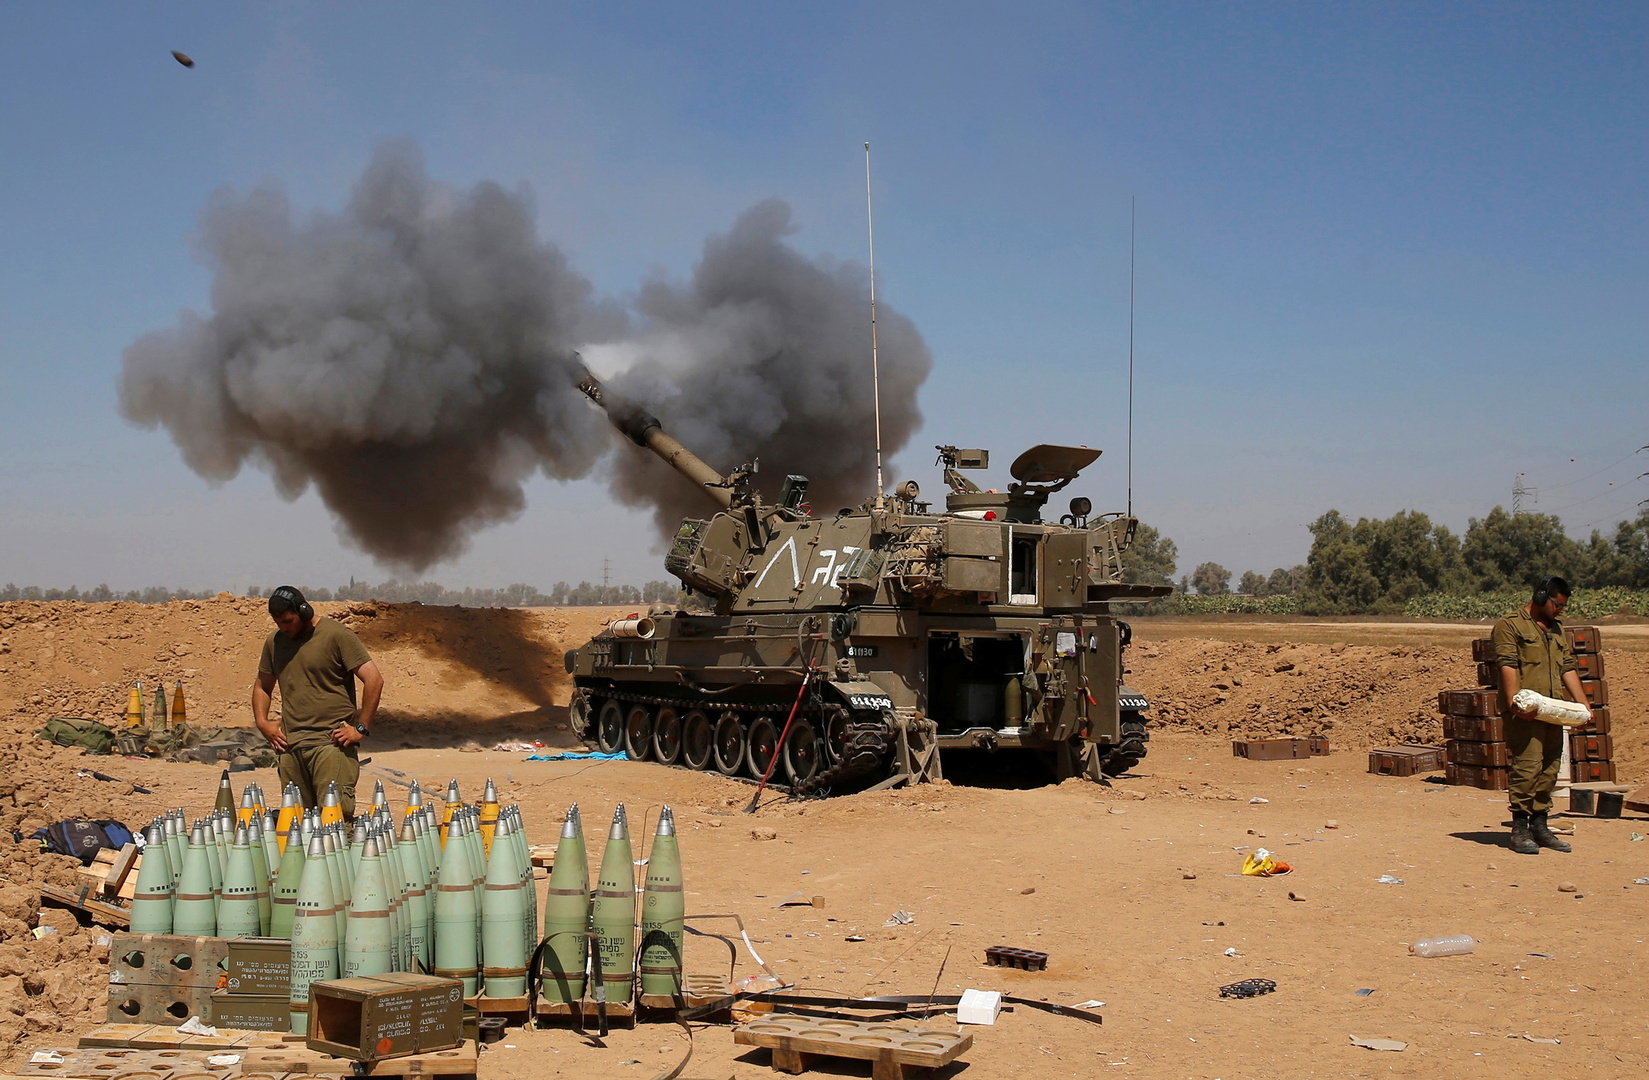 وكالة: المدفعية الإسرائيلية تقصف أحراج مزارع شبعا الداخلية بقذائف ثقيلة